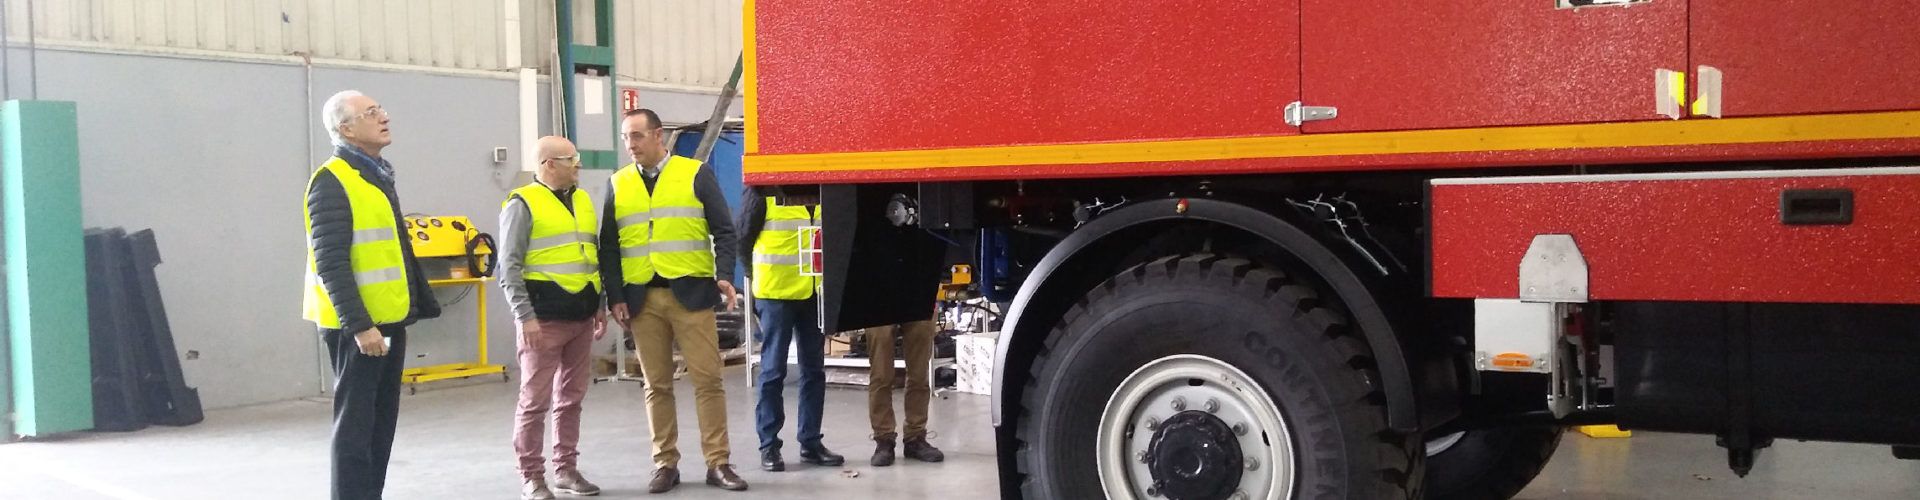 El Consorci Provincial de Bombers adquireix set camions per a millorar la seua capacitat de resposta